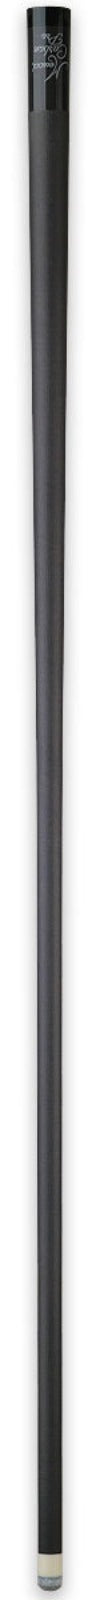 Meucci Carbon Fiber Pro Shaft - 11.9 mm -Meucci